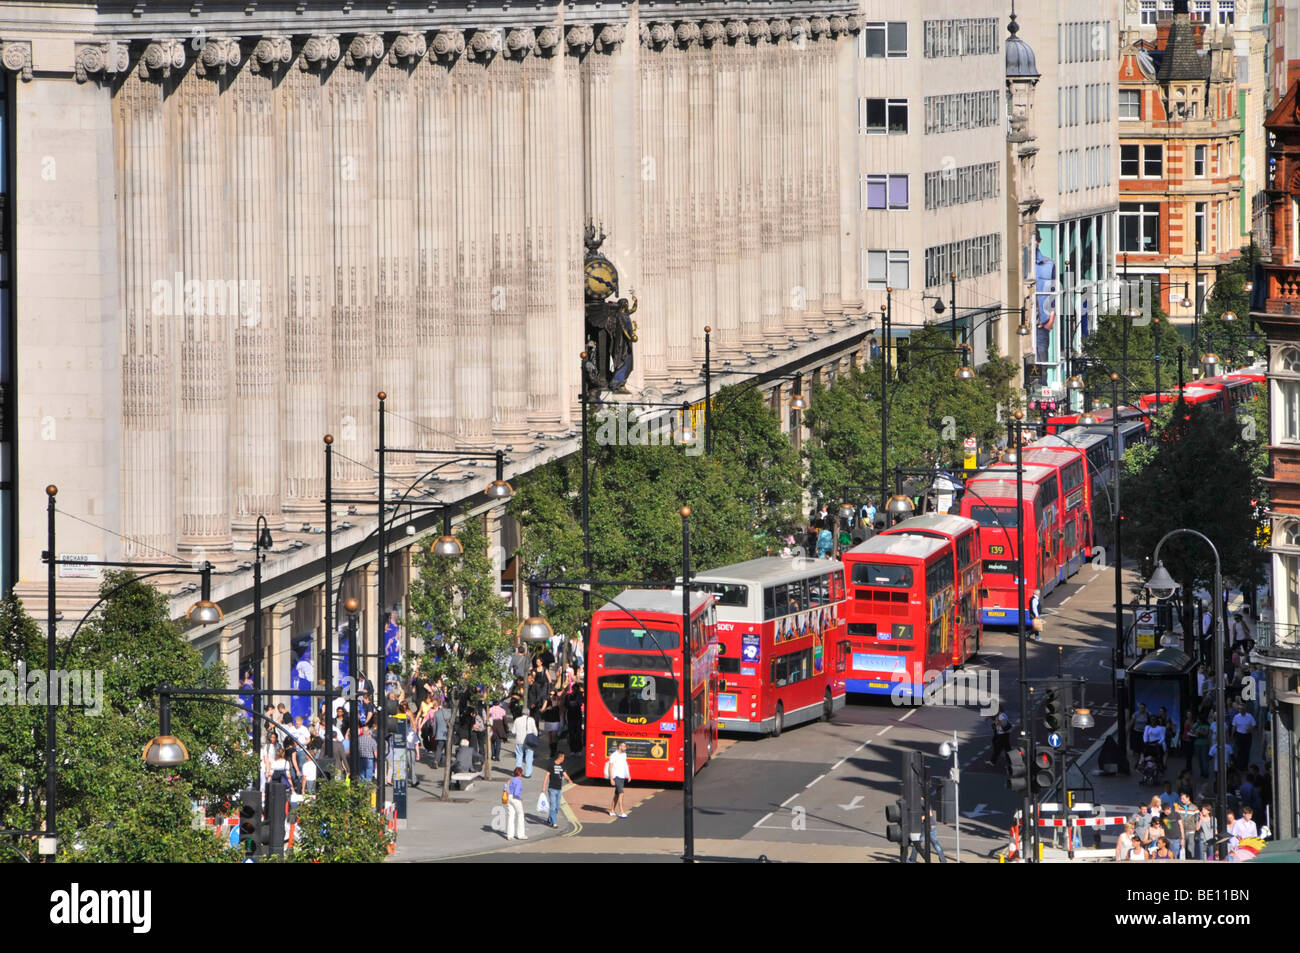 Oxford Street facciata di dal grande magazzino Selfridges con lunga coda di double decker autobus rossi di Londra alle fermate degli autobus e giunzioni Foto Stock